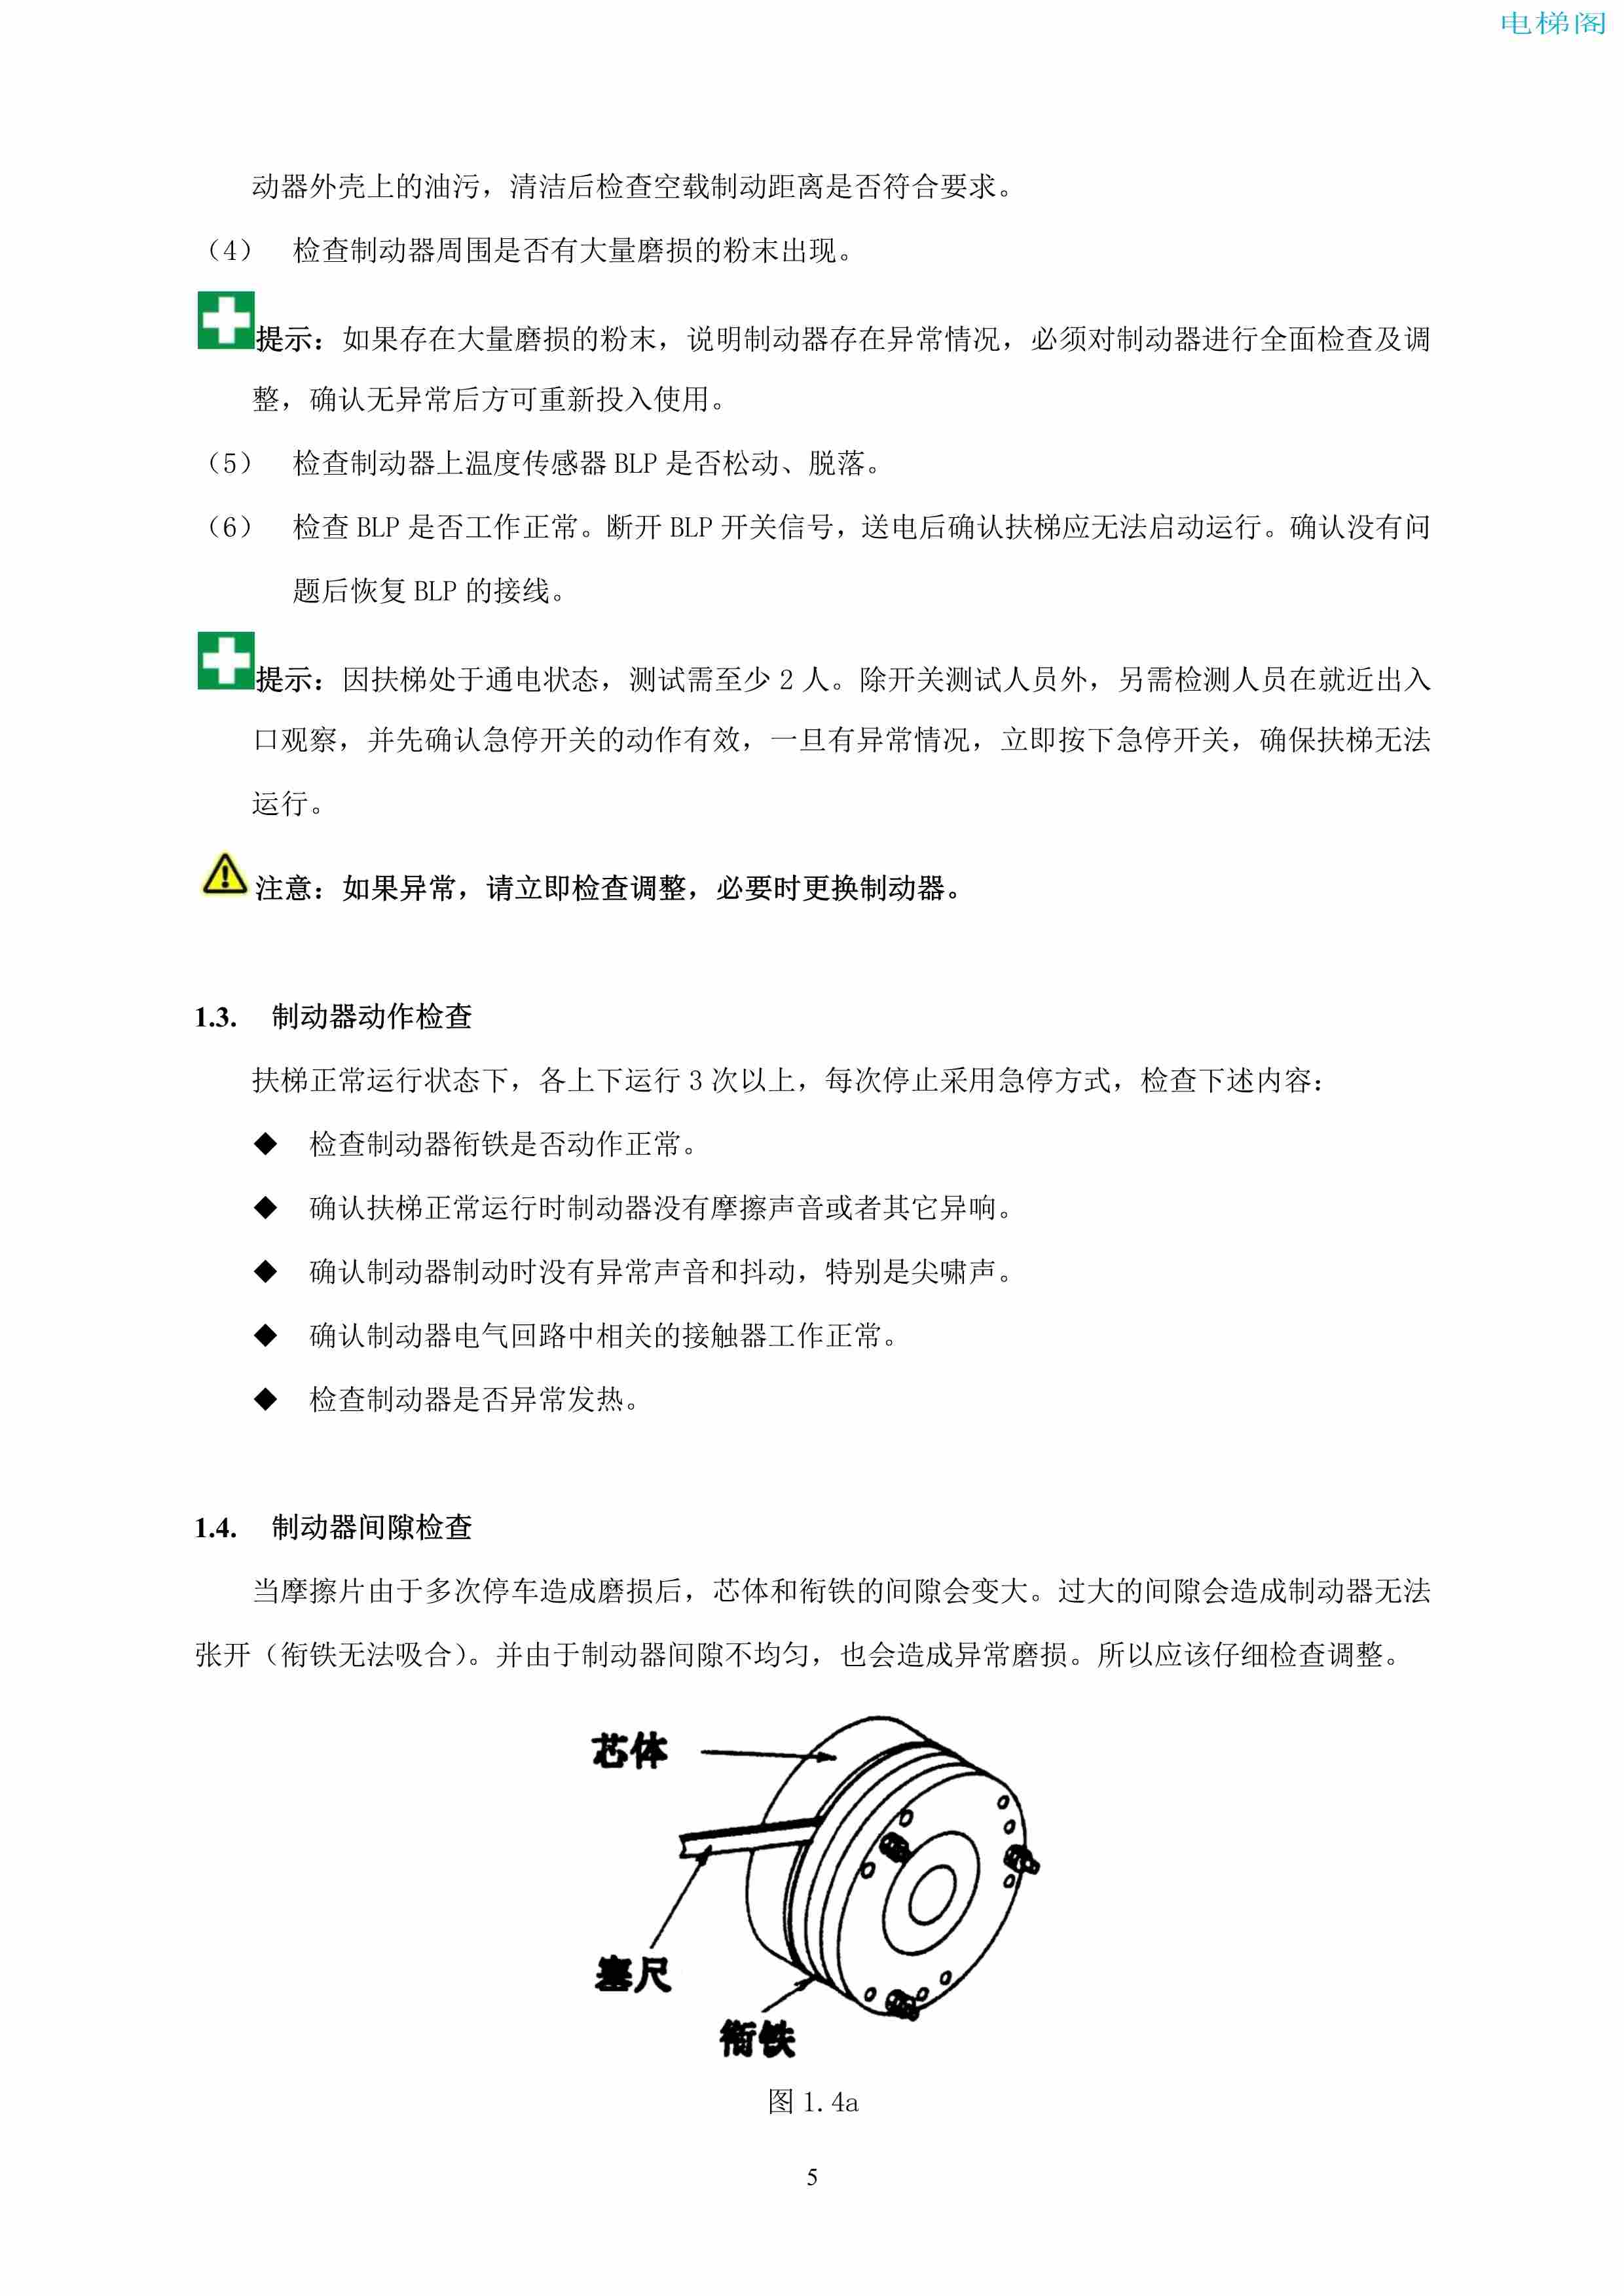 上海三菱电梯有限公司自动扶梯制动器维护作业要领汇编_6.jpg